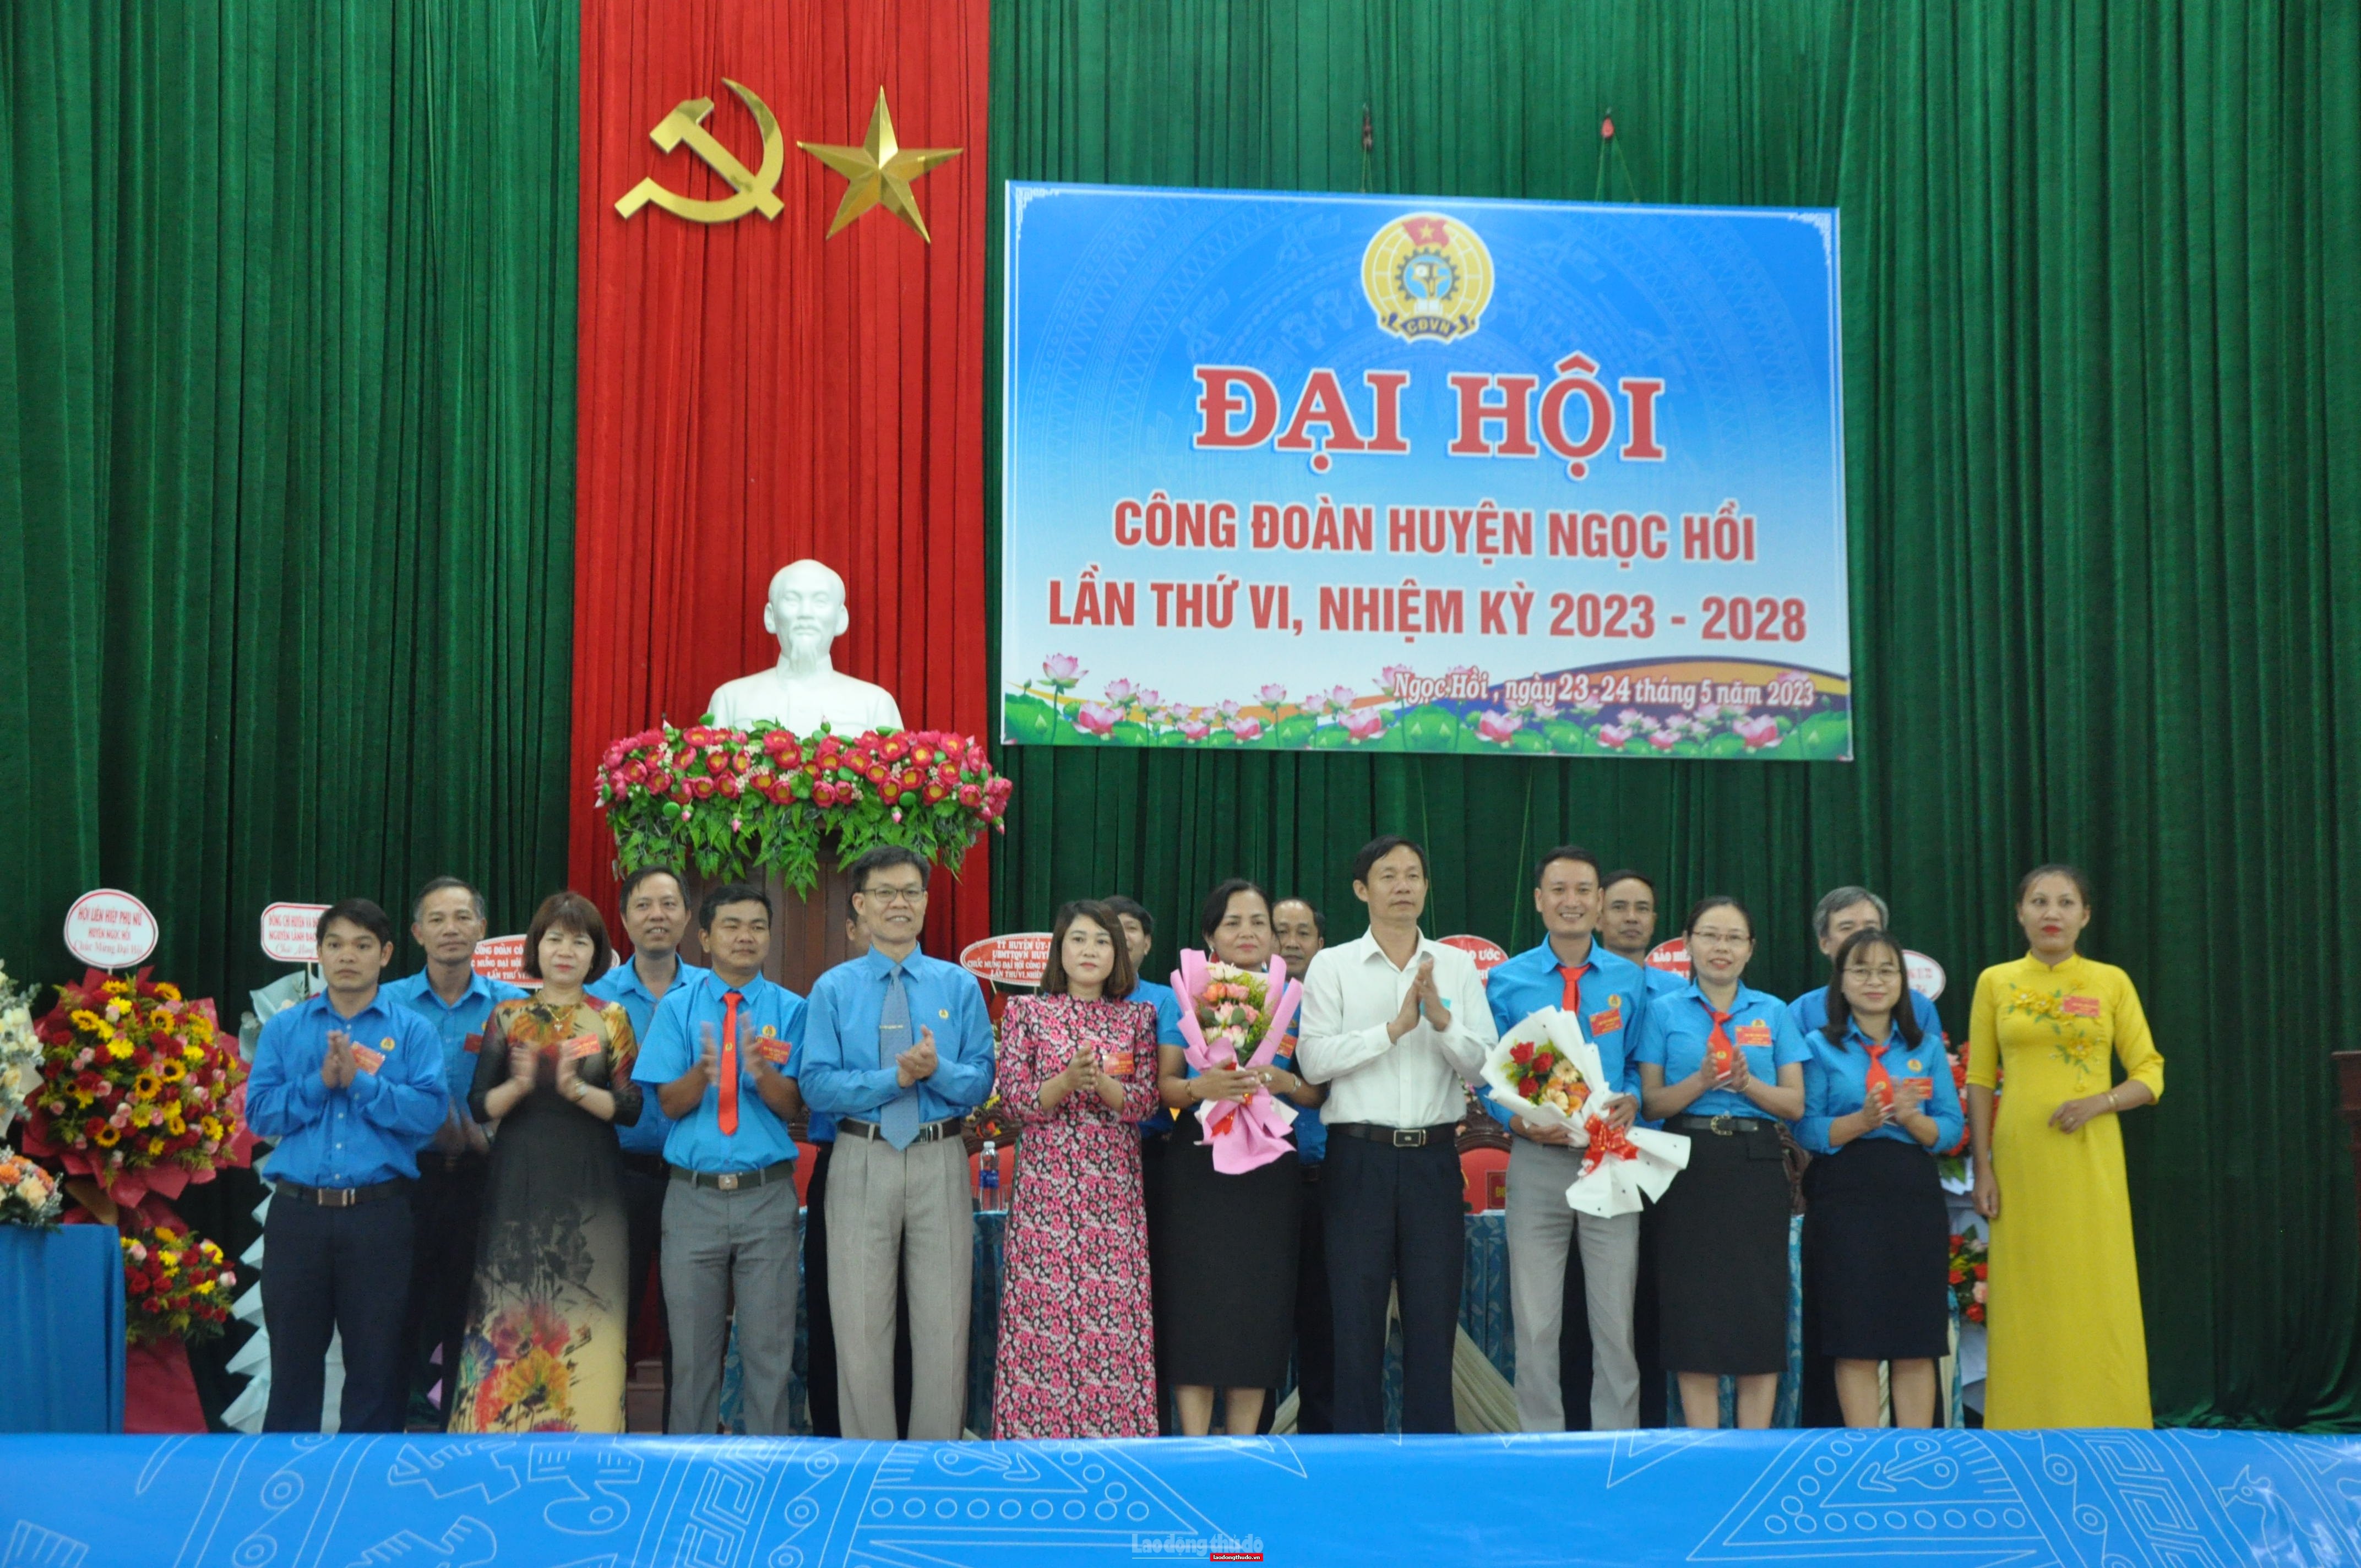 Tổ chức thành công Đại hội Công đoàn huyện Ngọc Hồi lần thứ VI